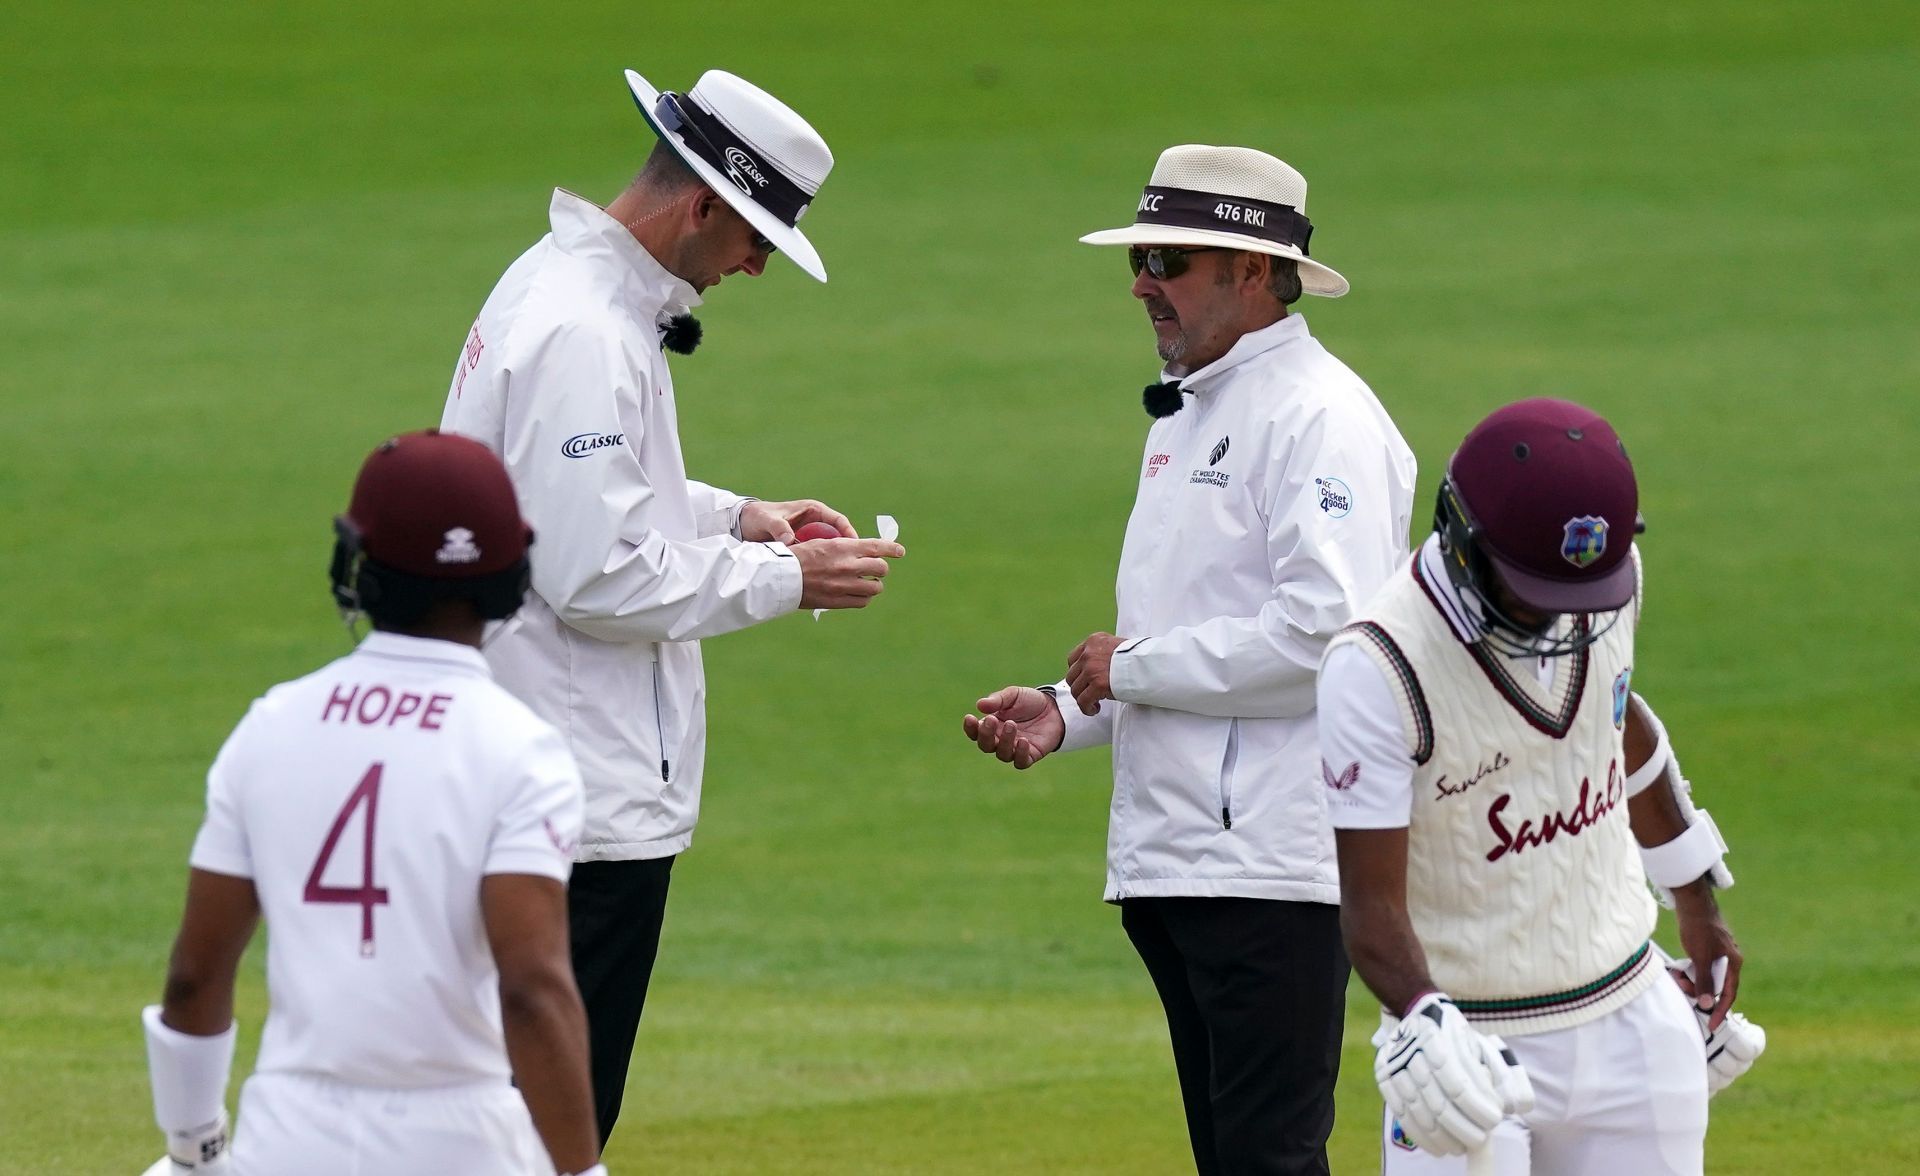 England v West Indies: Day 4 - Second Test #RaiseTheBat Series